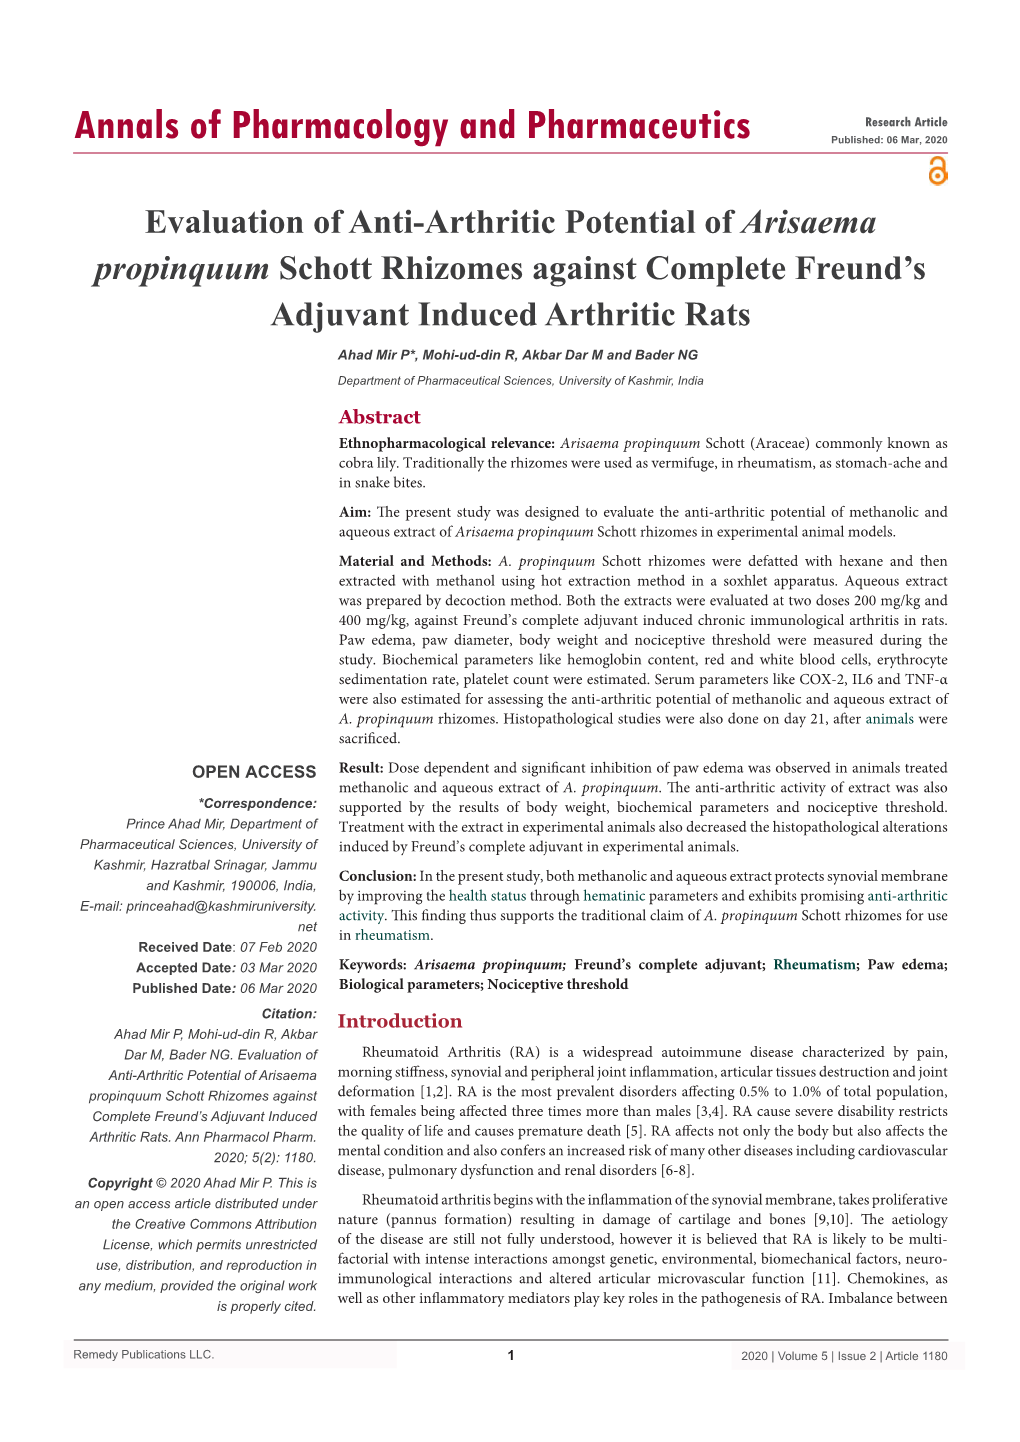 Evaluation of Anti-Arthritic Potential of Arisaema Propinquum Schott Rhizomes Against Complete Freund’S Adjuvant Induced Arthritic Rats